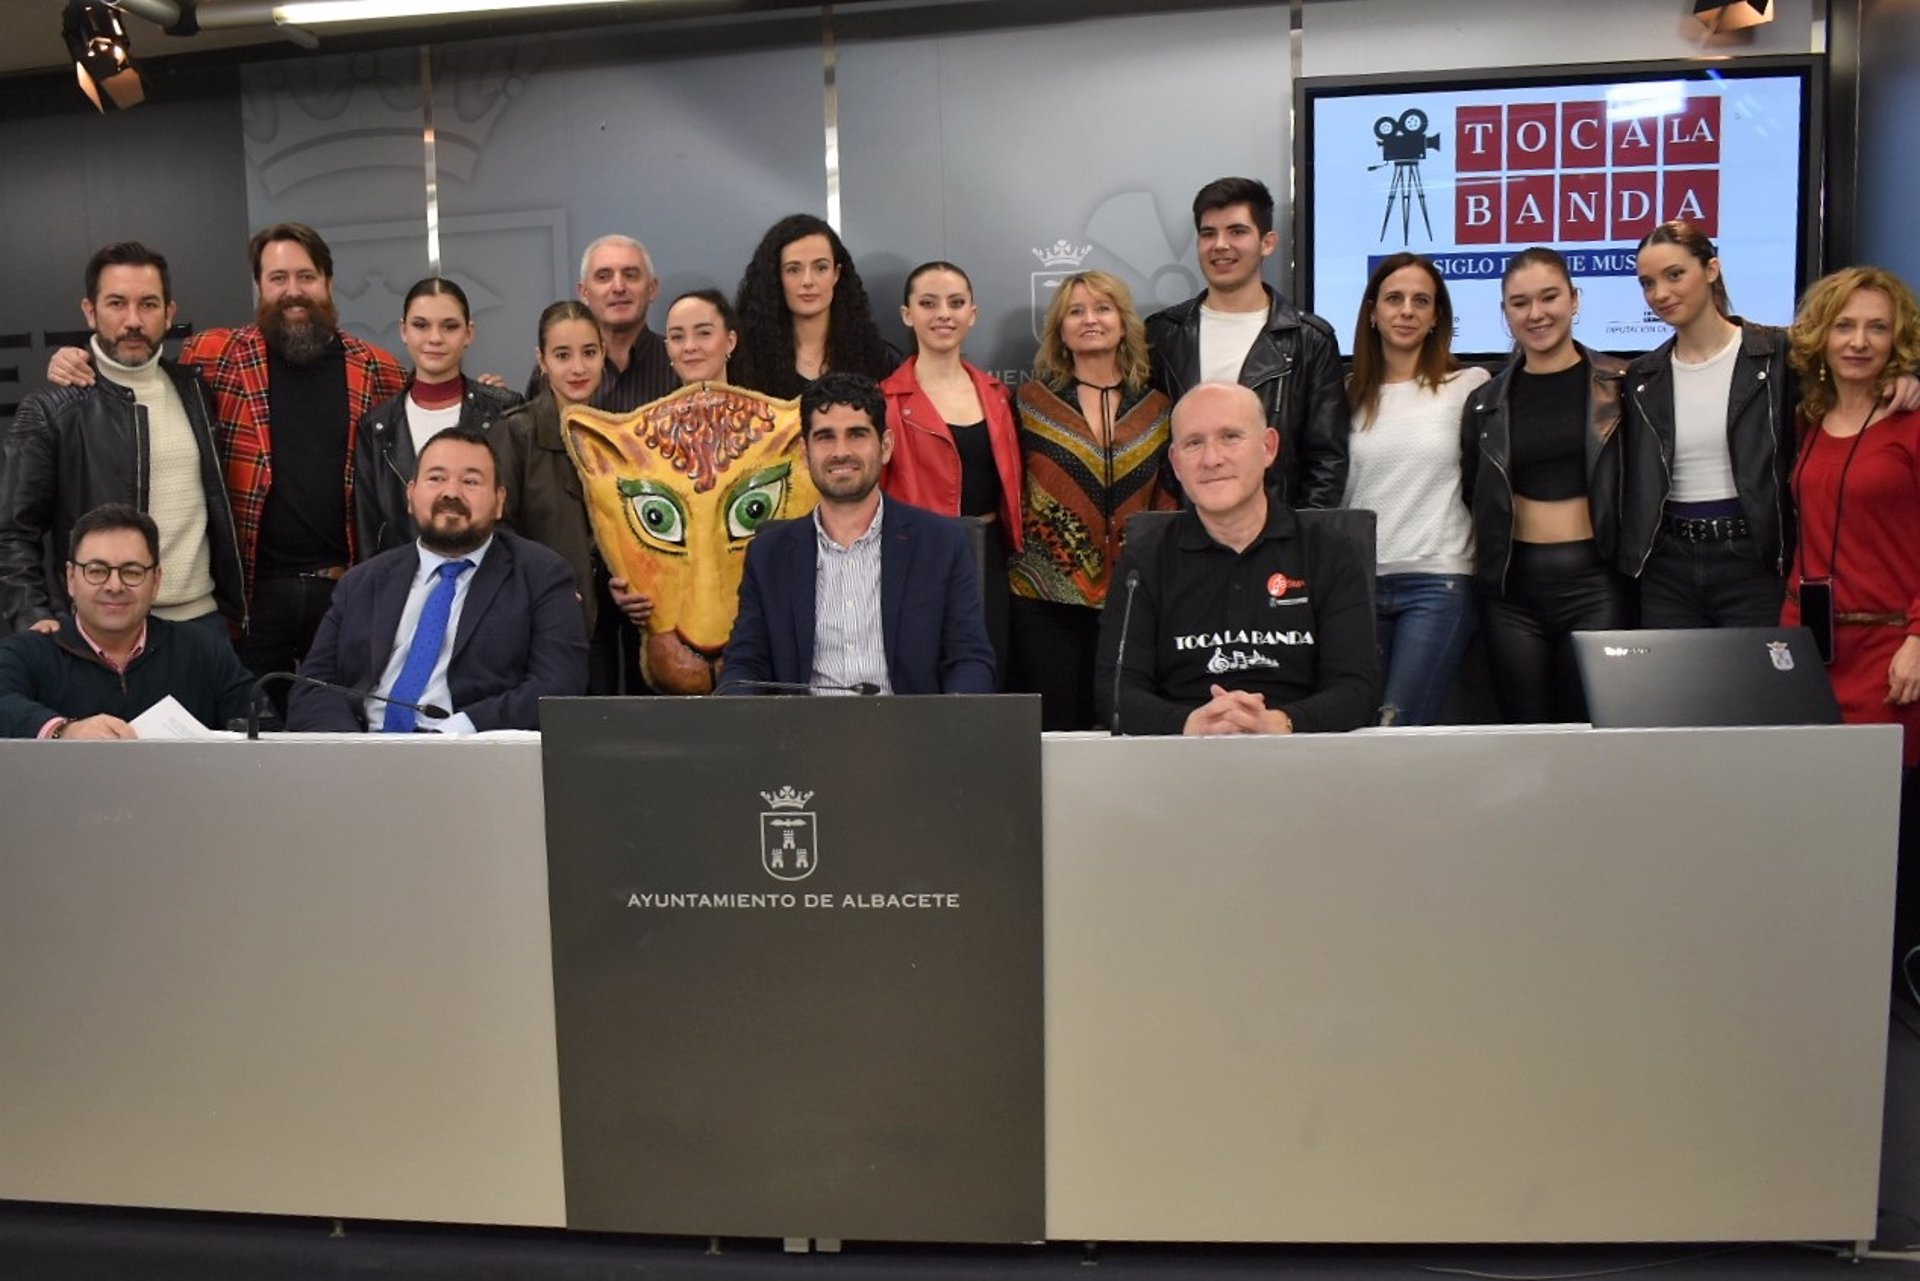 Presentación del programa "Toca la Banda" en el Ayuntamiento de Albacete.